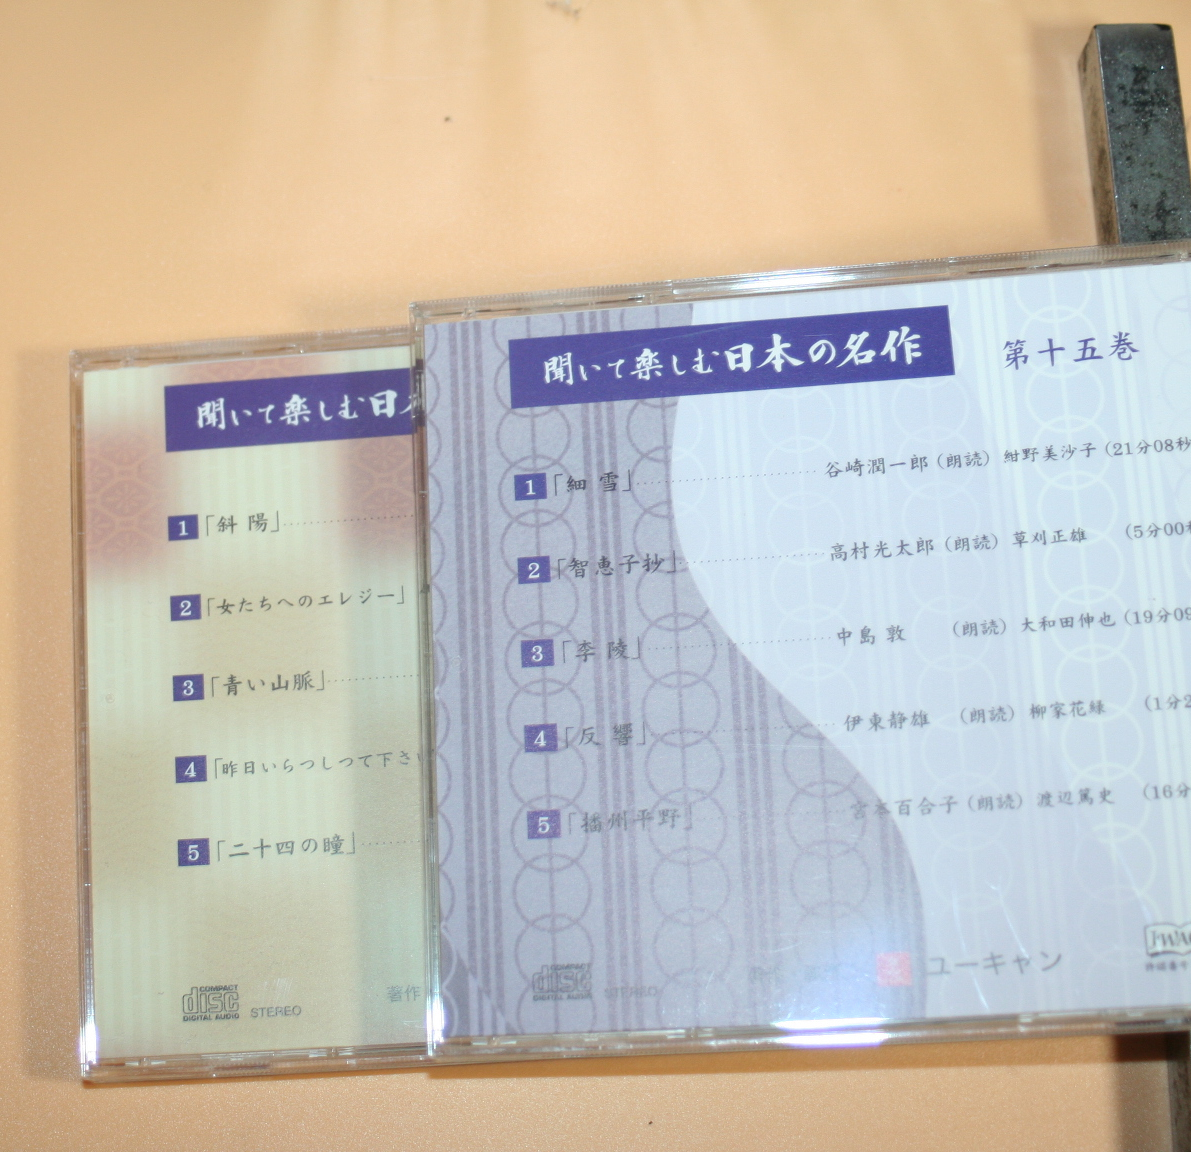  ユーキャン『聞いて楽しむ日本の名作』 CD全16巻セットの画像7